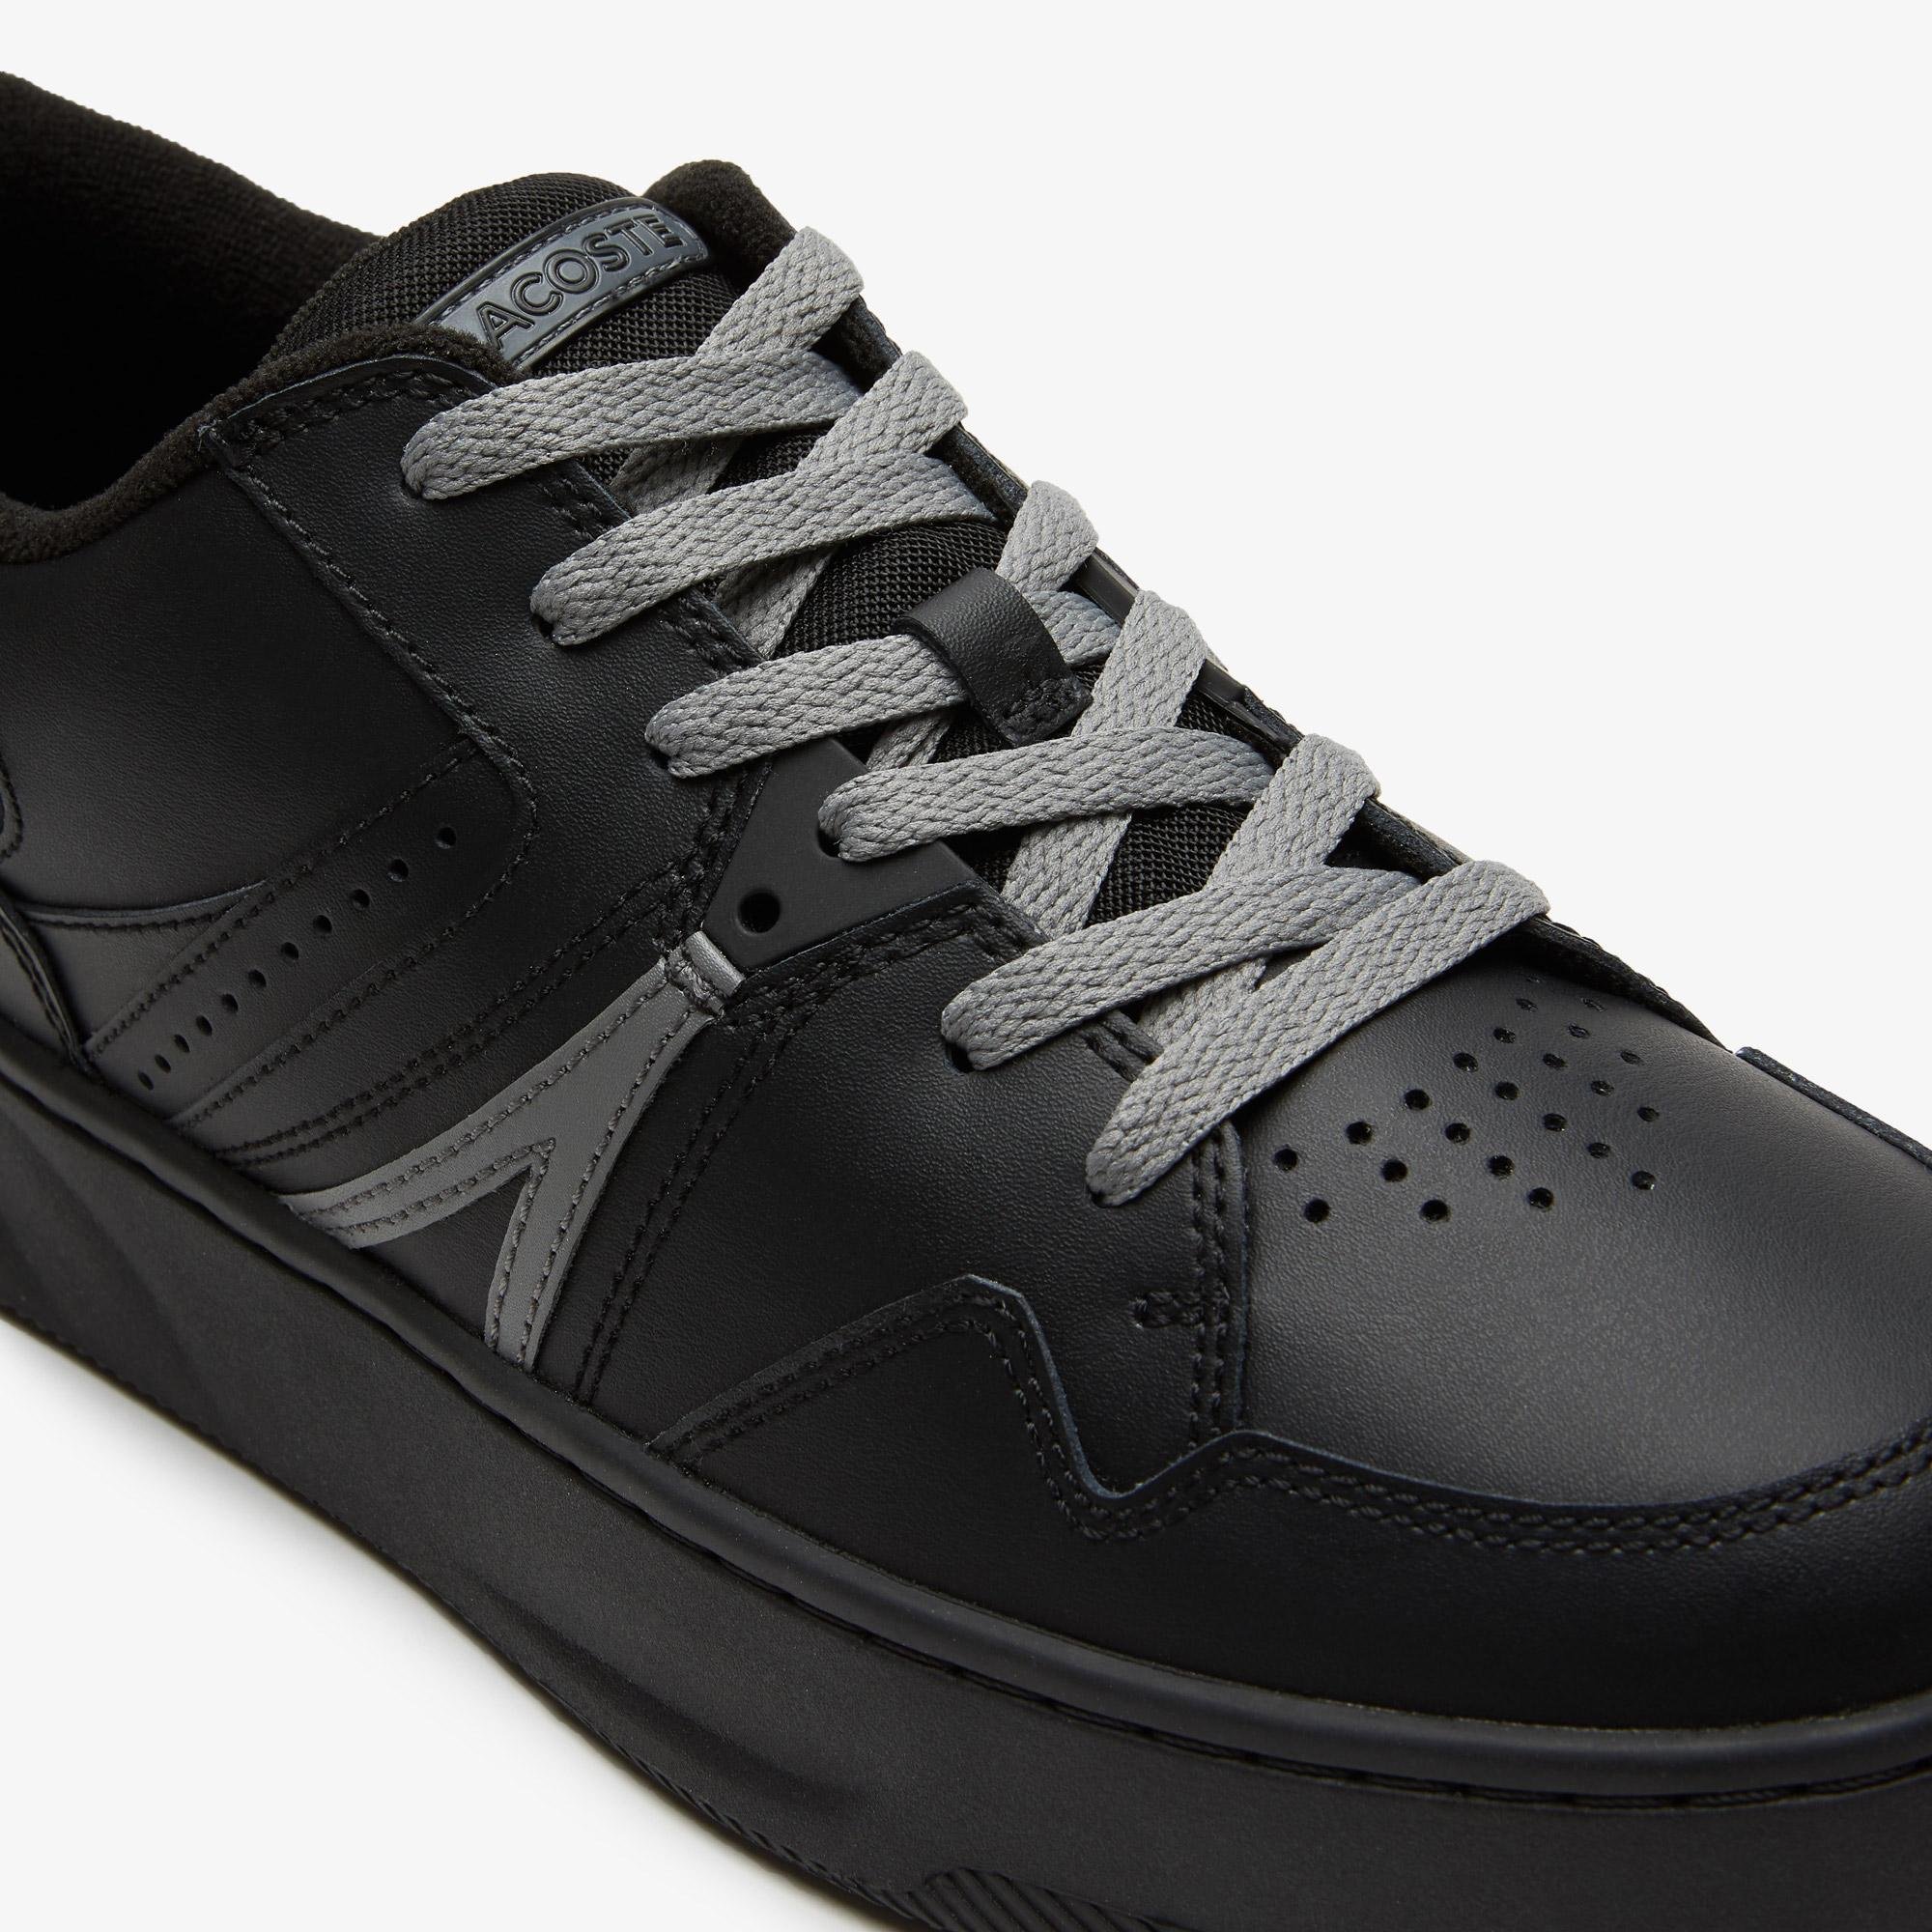 Lacoste Men's L005 Sneakers